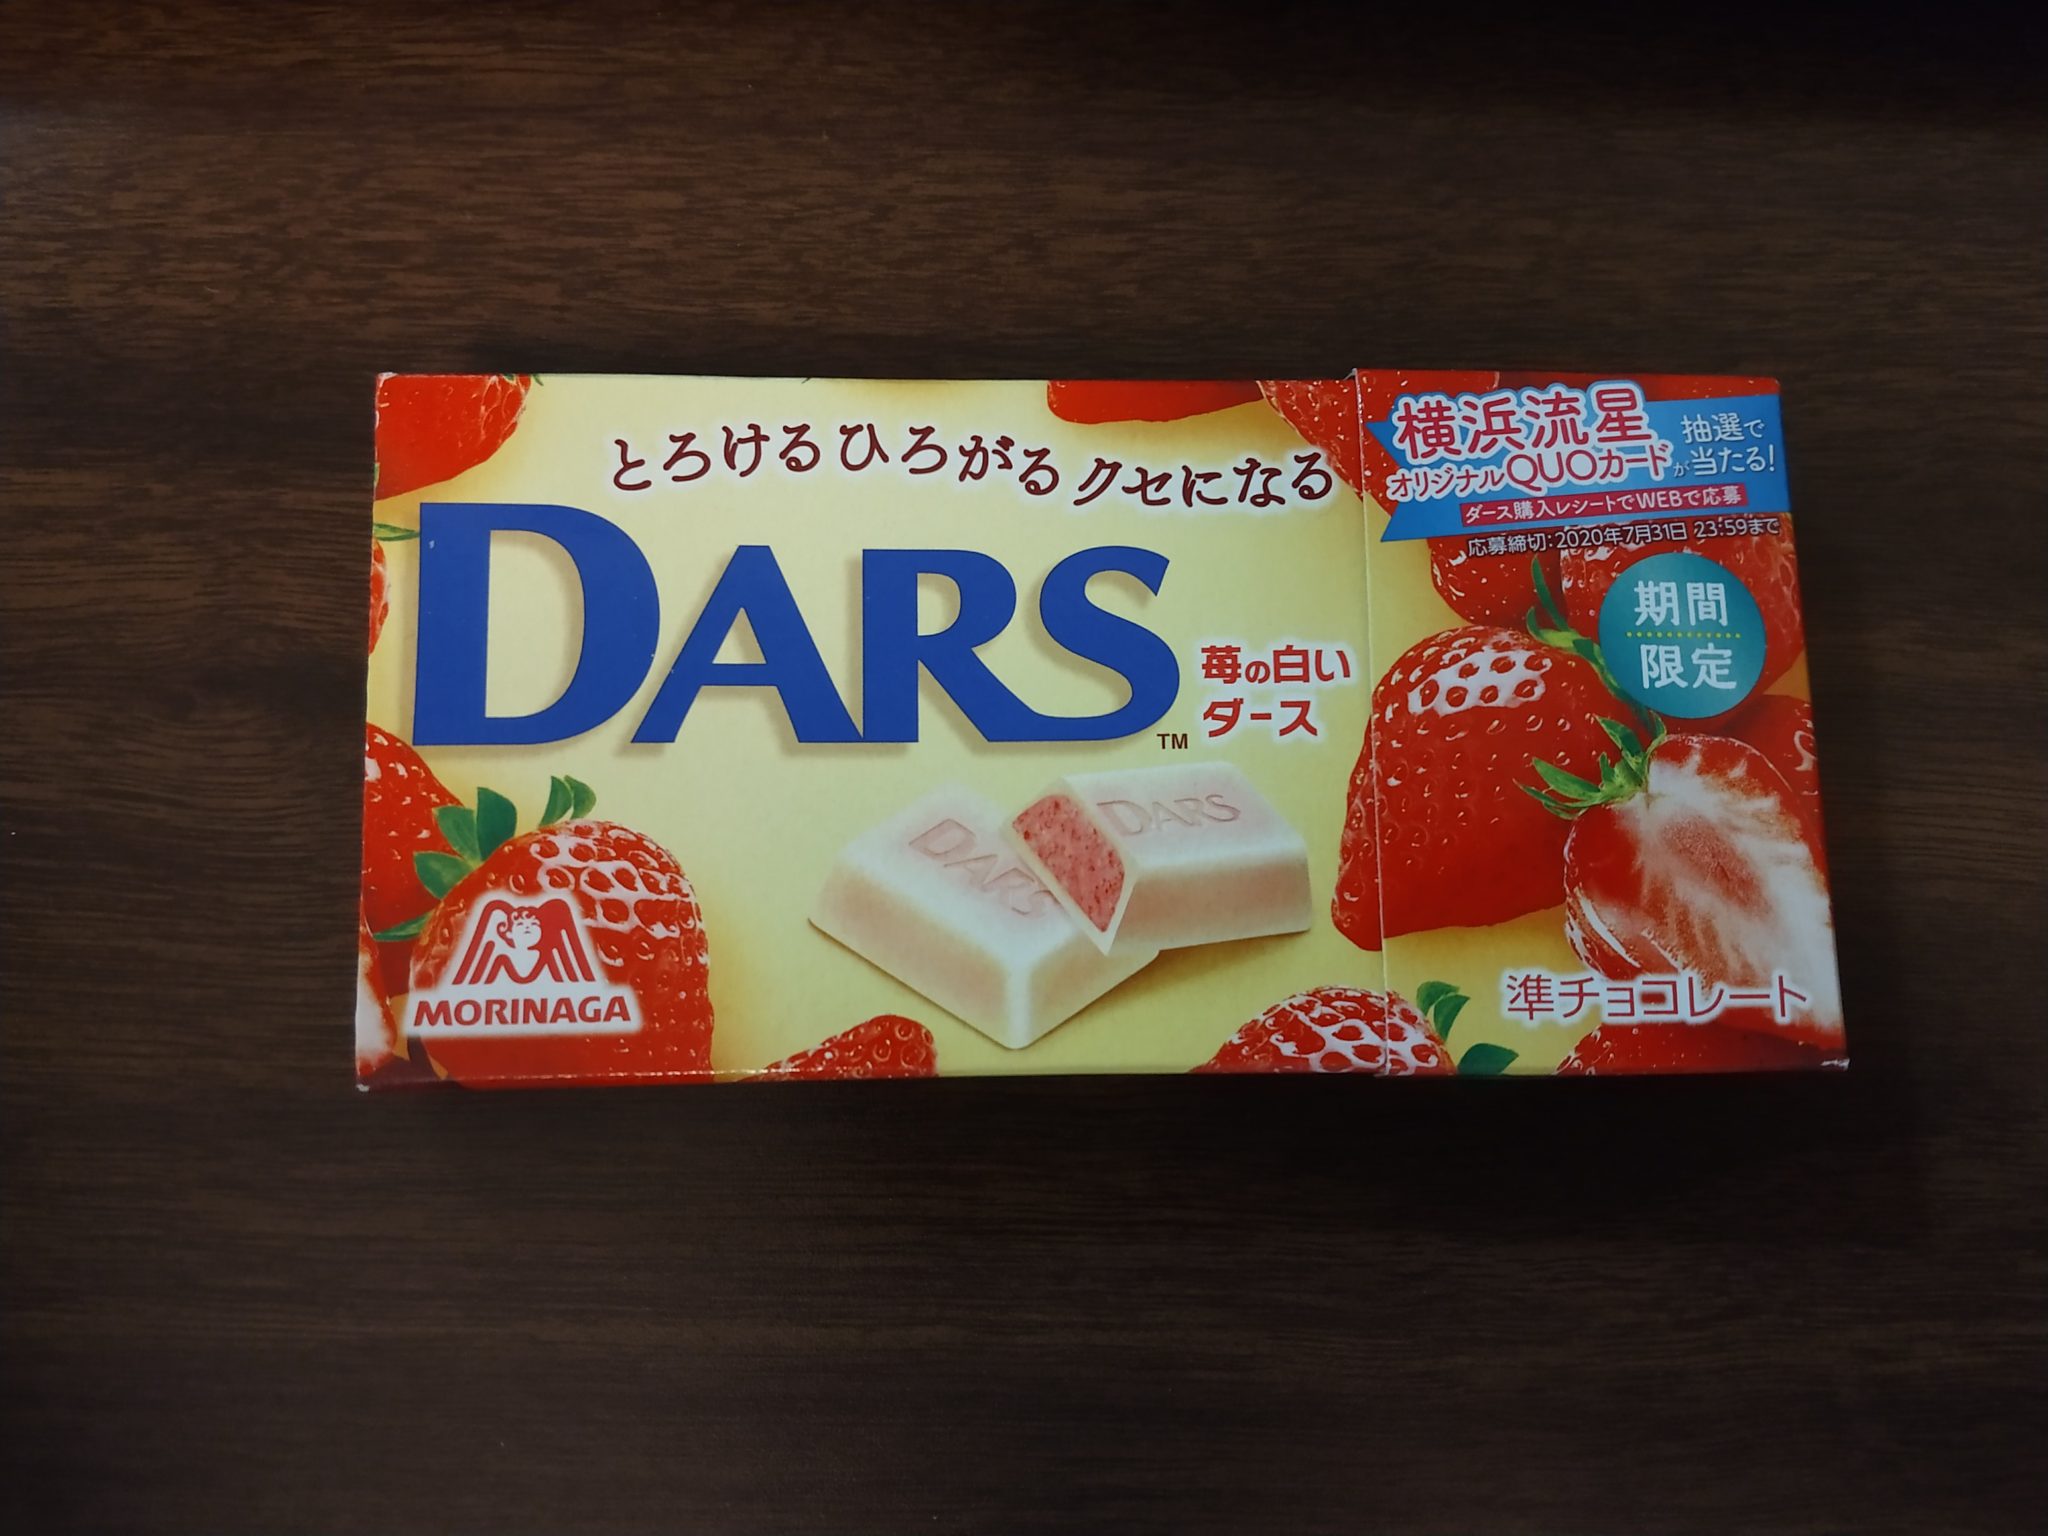 DARS Chocolate – White Strawberry